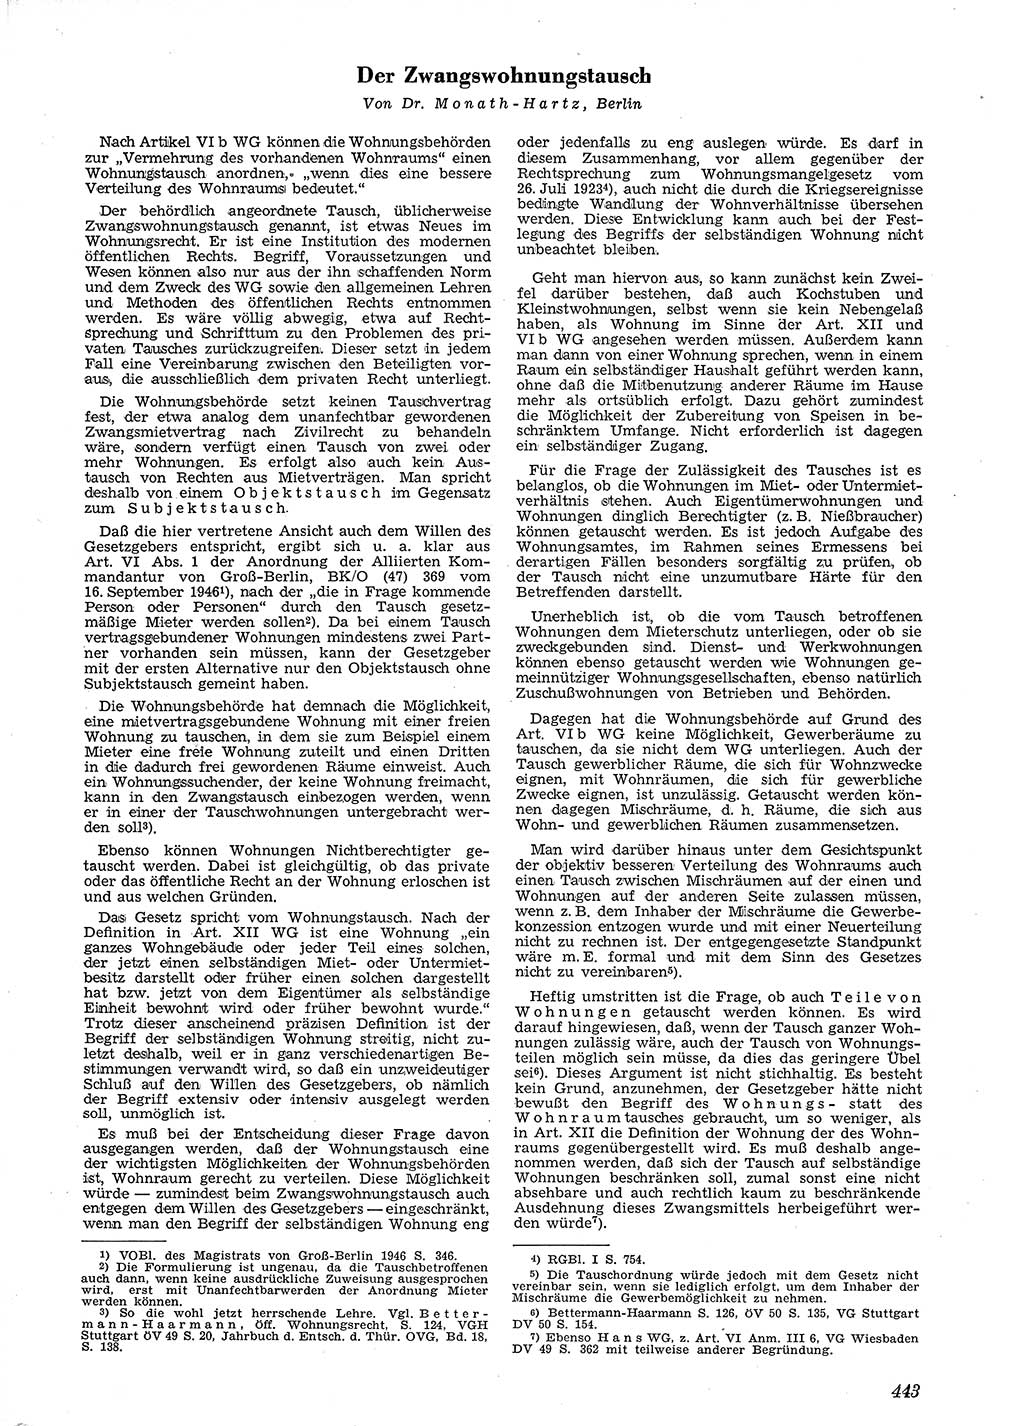 Neue Justiz (NJ), Zeitschrift für Recht und Rechtswissenschaft [Deutsche Demokratische Republik (DDR)], 4. Jahrgang 1950, Seite 443 (NJ DDR 1950, S. 443)